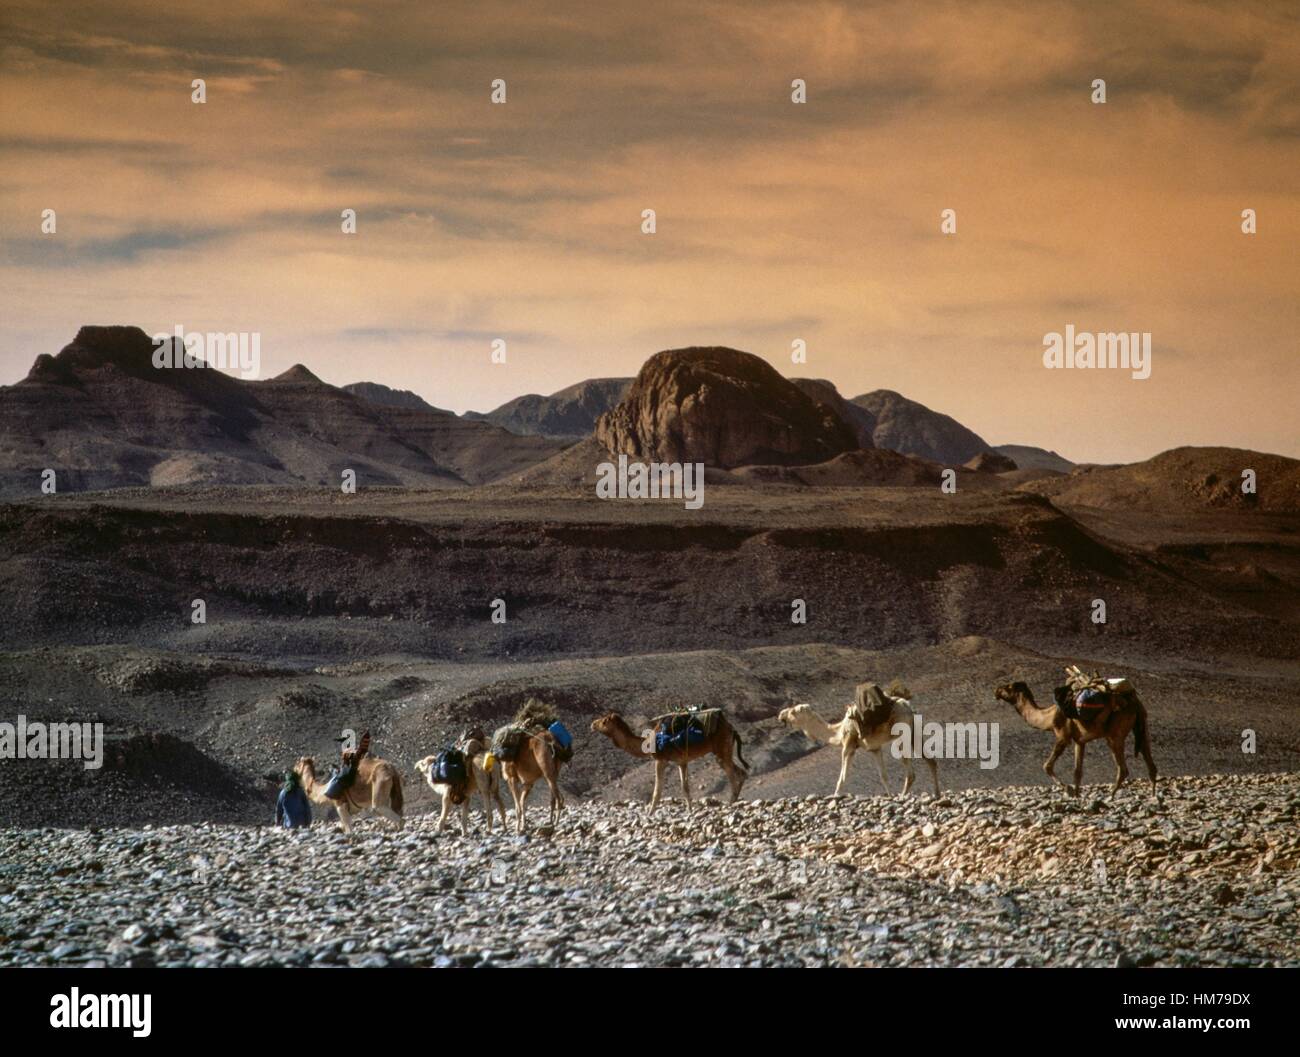 Caravana de camellos, montañas Hoggar (Ahaggar), cordillera formada a partir de rocas volcánicas, el desierto del Sahara, Argelia. Foto de stock